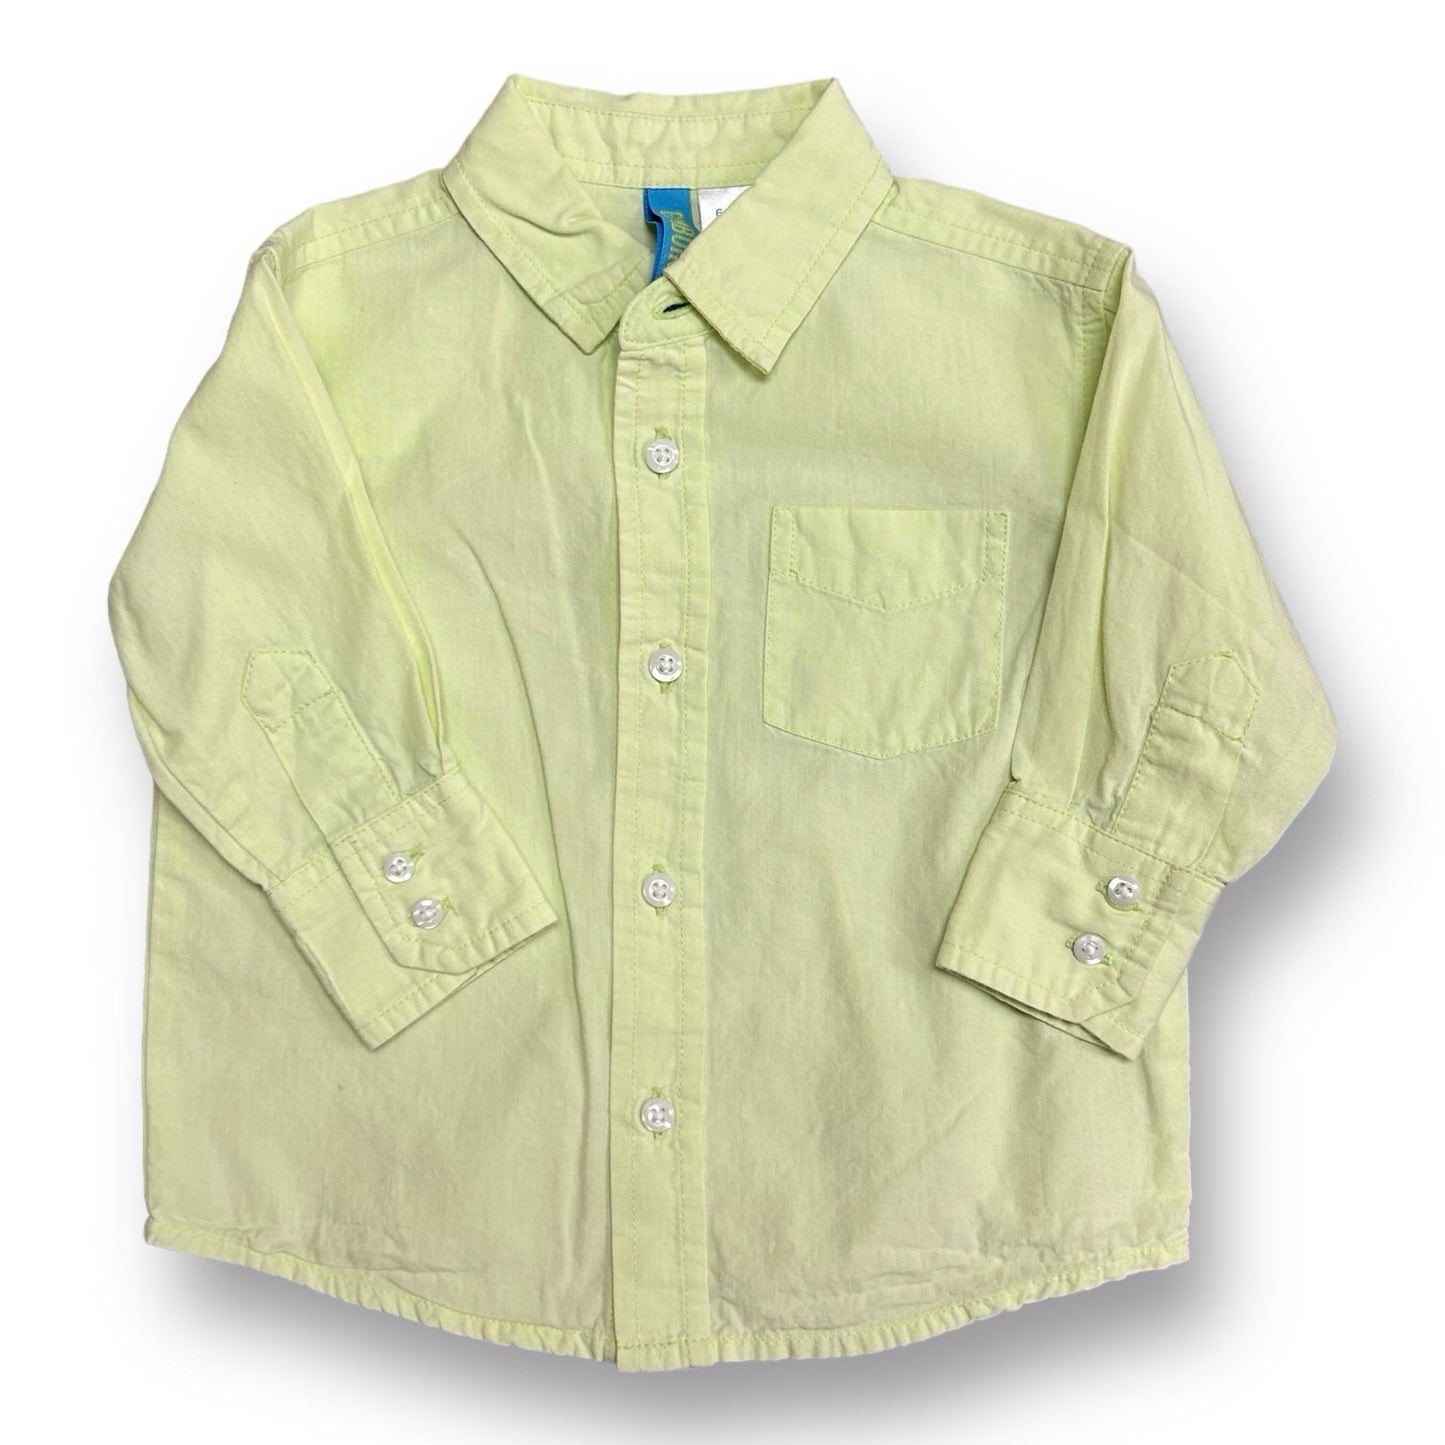 Boys Gymboree Size 6-12 Months Lime Green Button Down Shirt